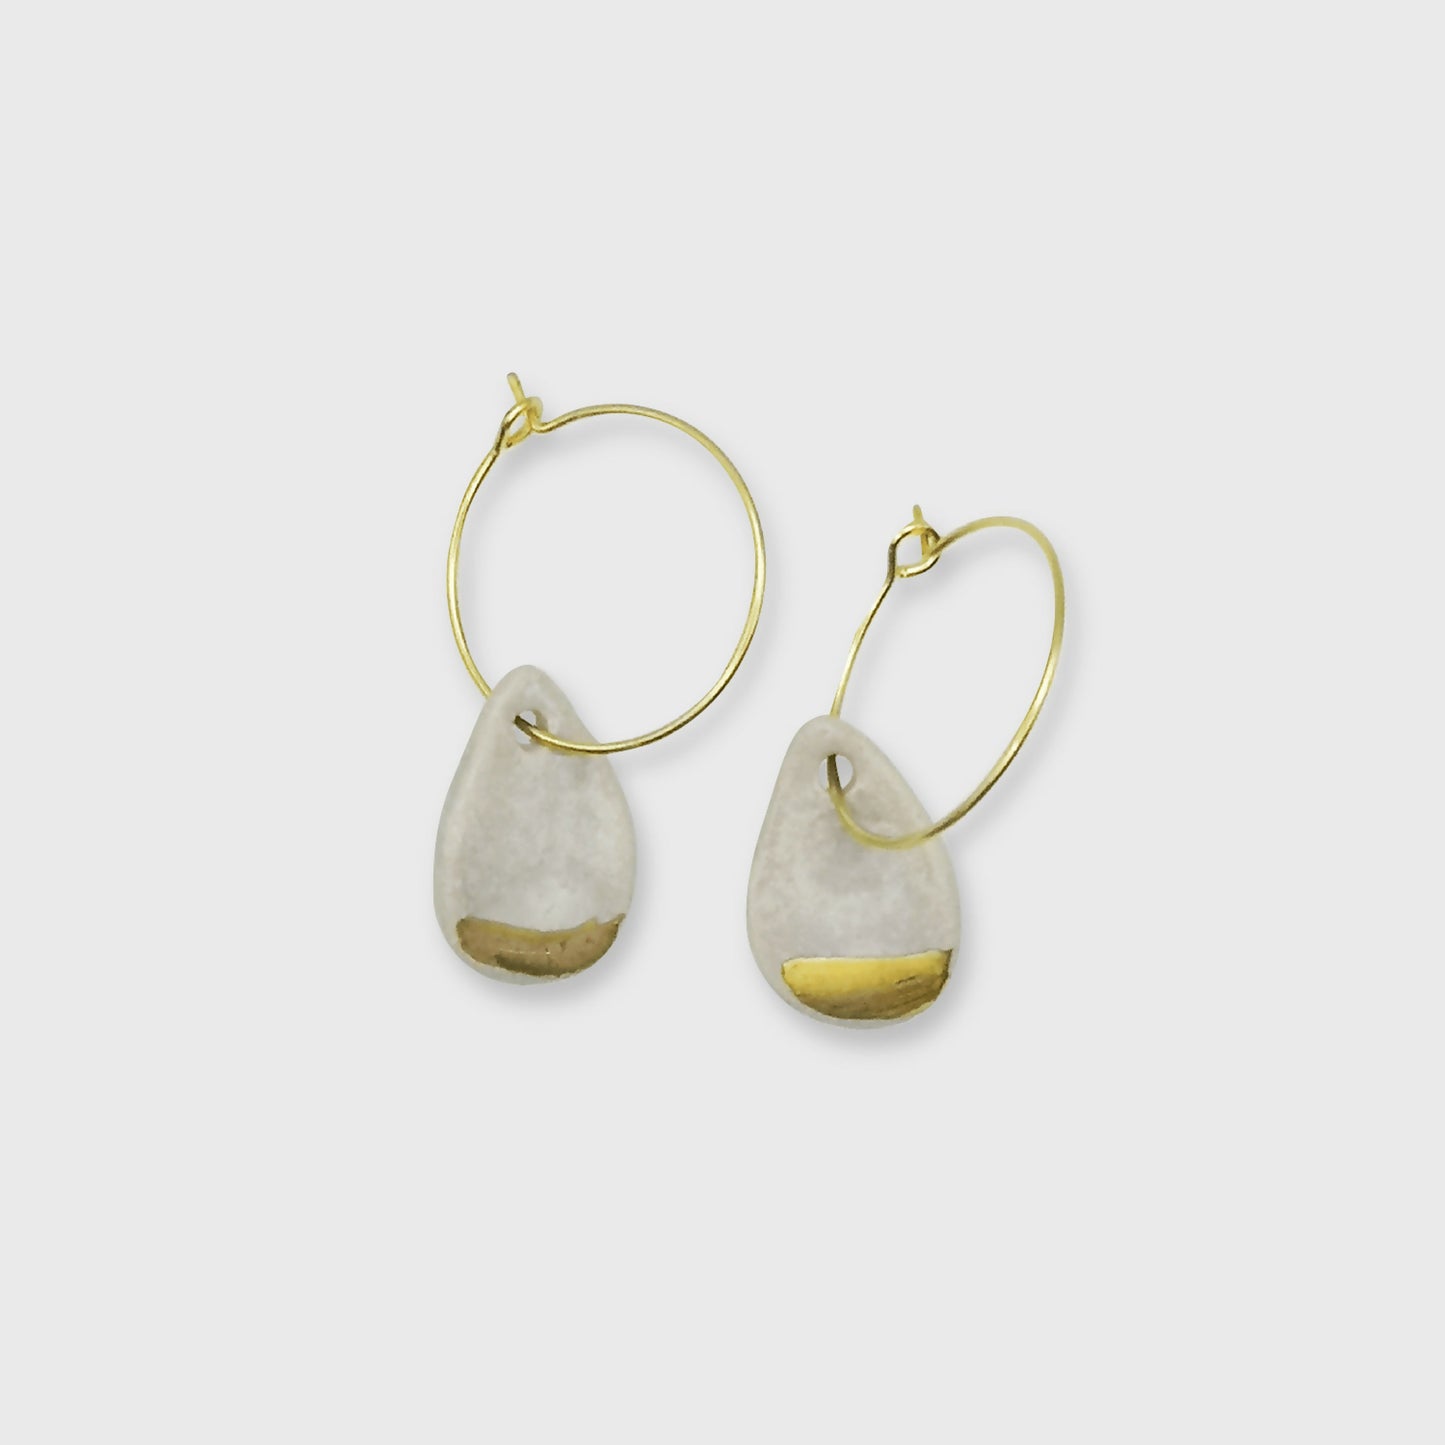 Boucles d'oreilles blanc nacre or pendante pour femme artisanat d'exception Corinne Ceramique Aix en Provence